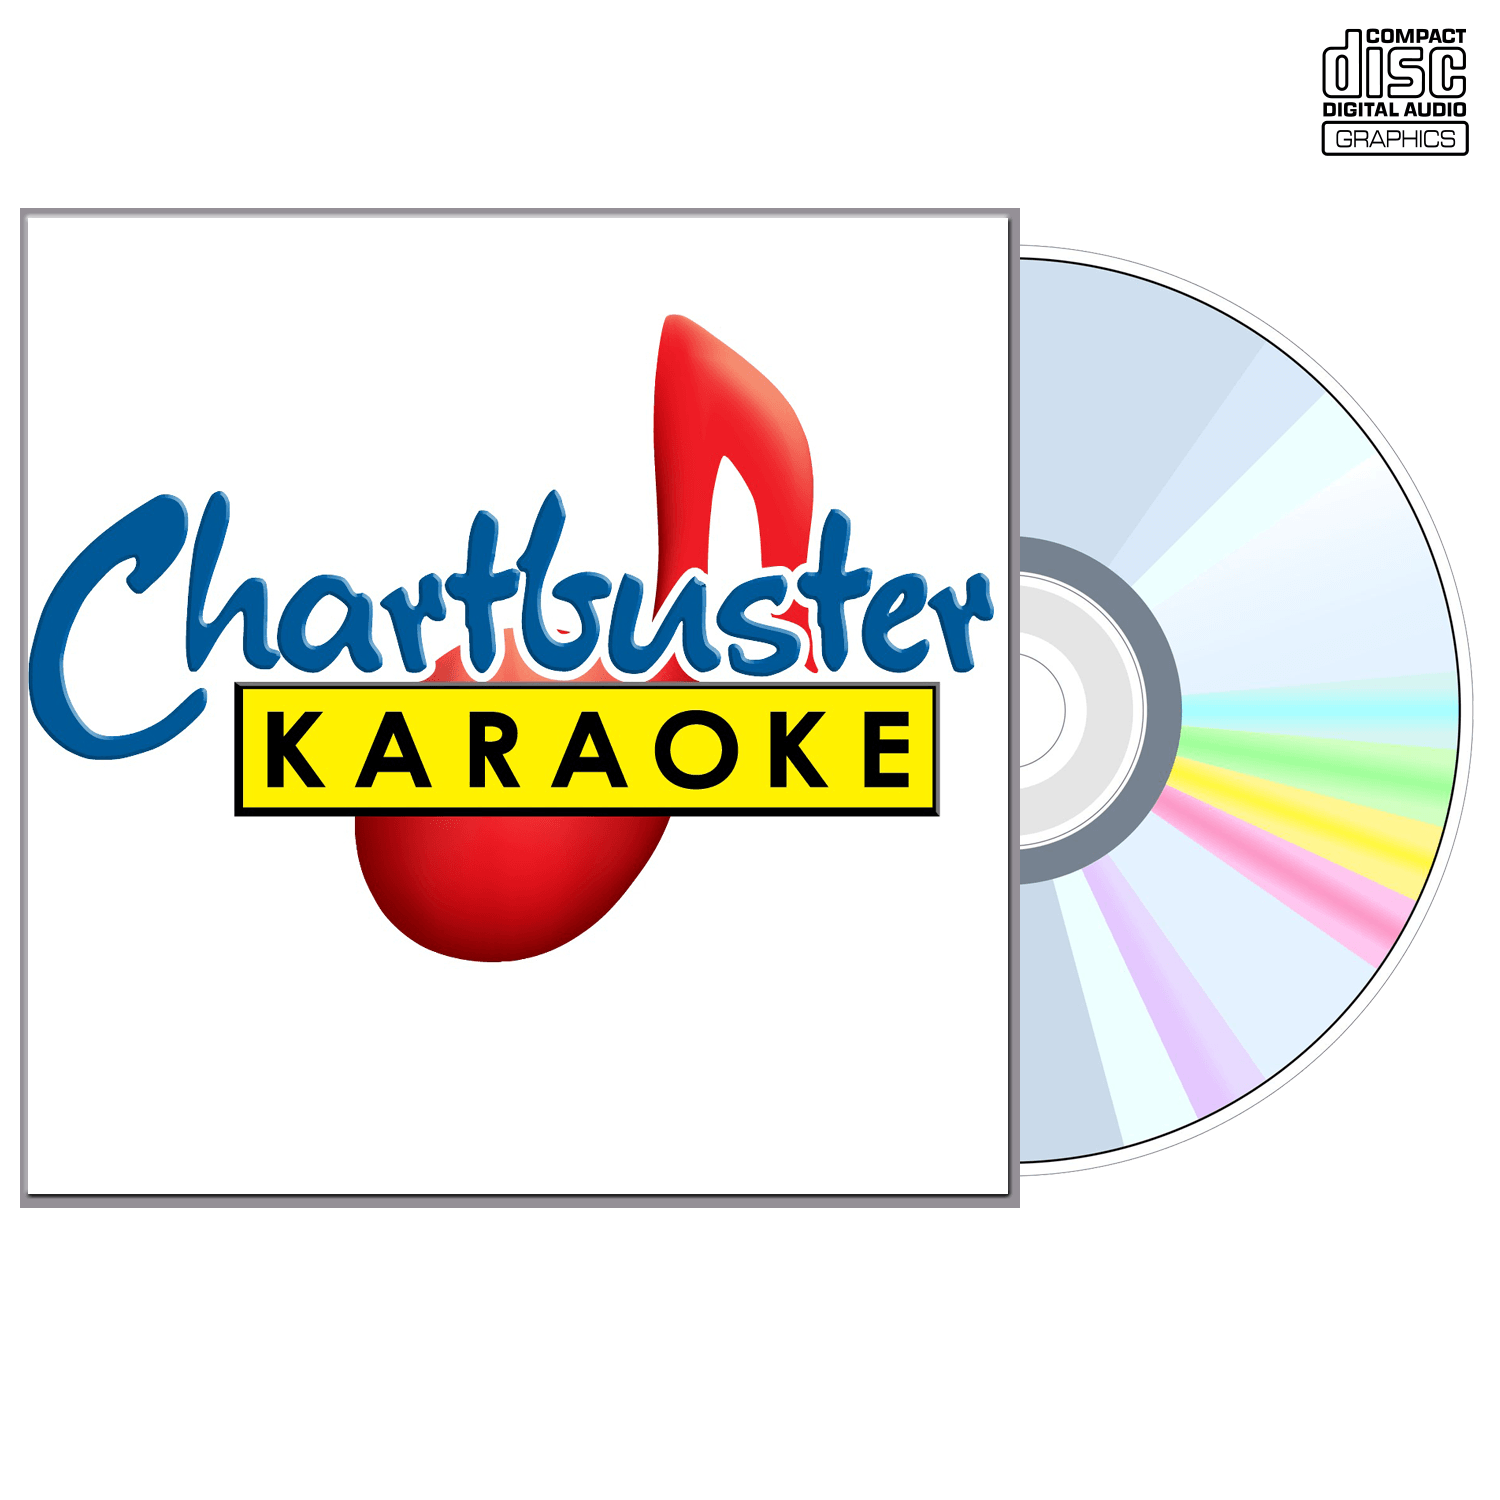 Emerson Drive - CD+G - Chartbuster Karaoke - Karaoke Home Entertainment